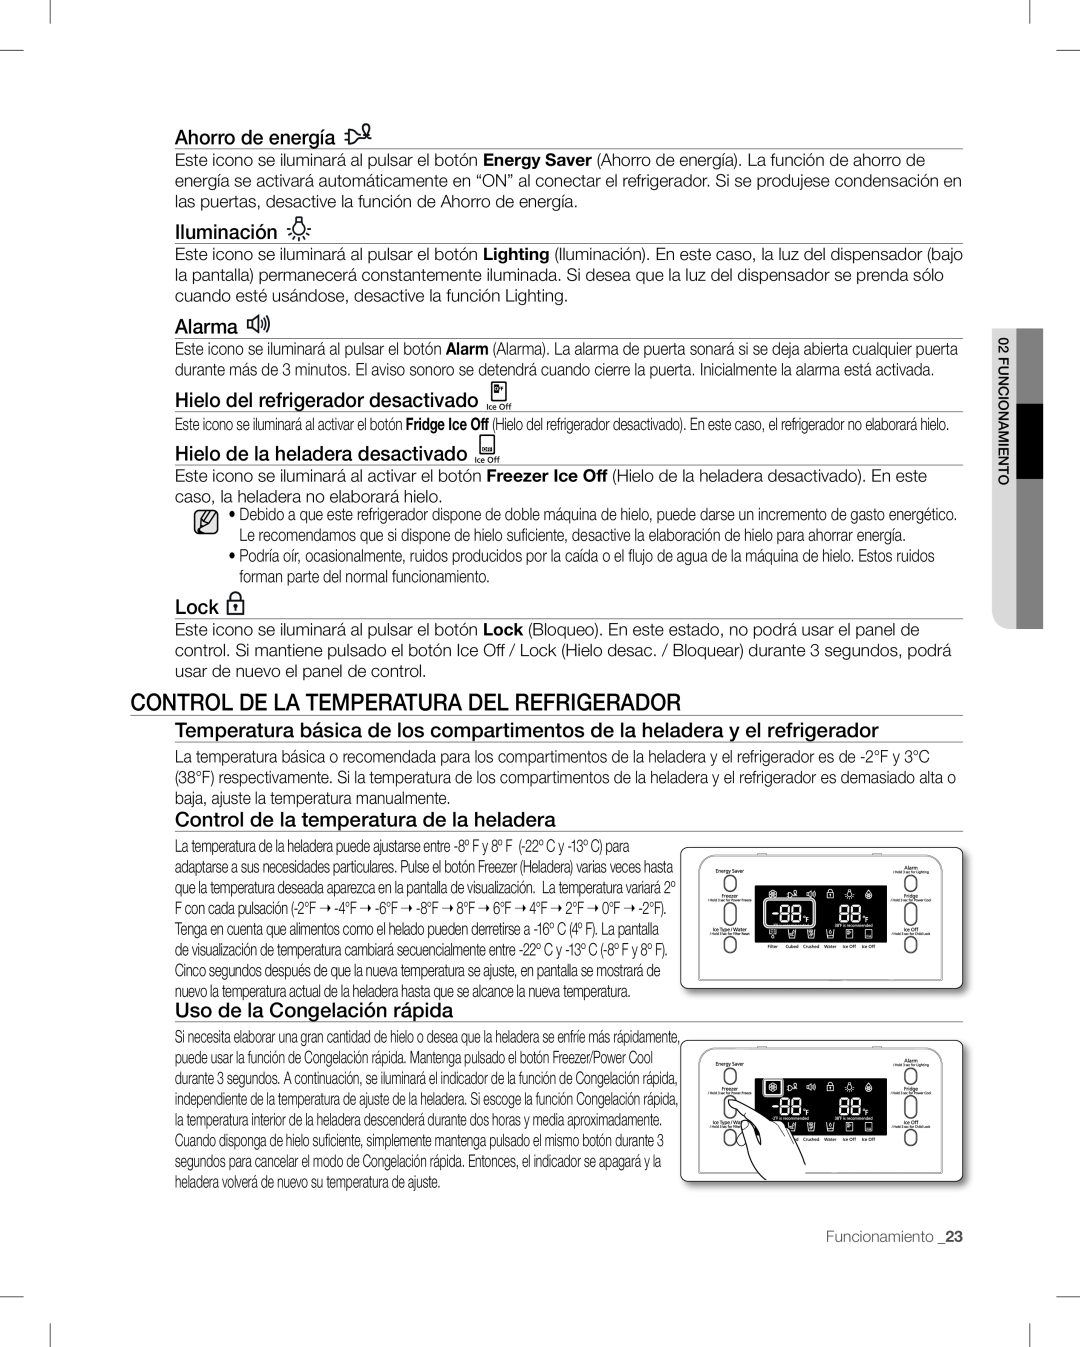 Samsung RF268AB user manual Ahorro de energía, Iluminación, Alarma, Hielo del refrigerador desactivado, Lock 